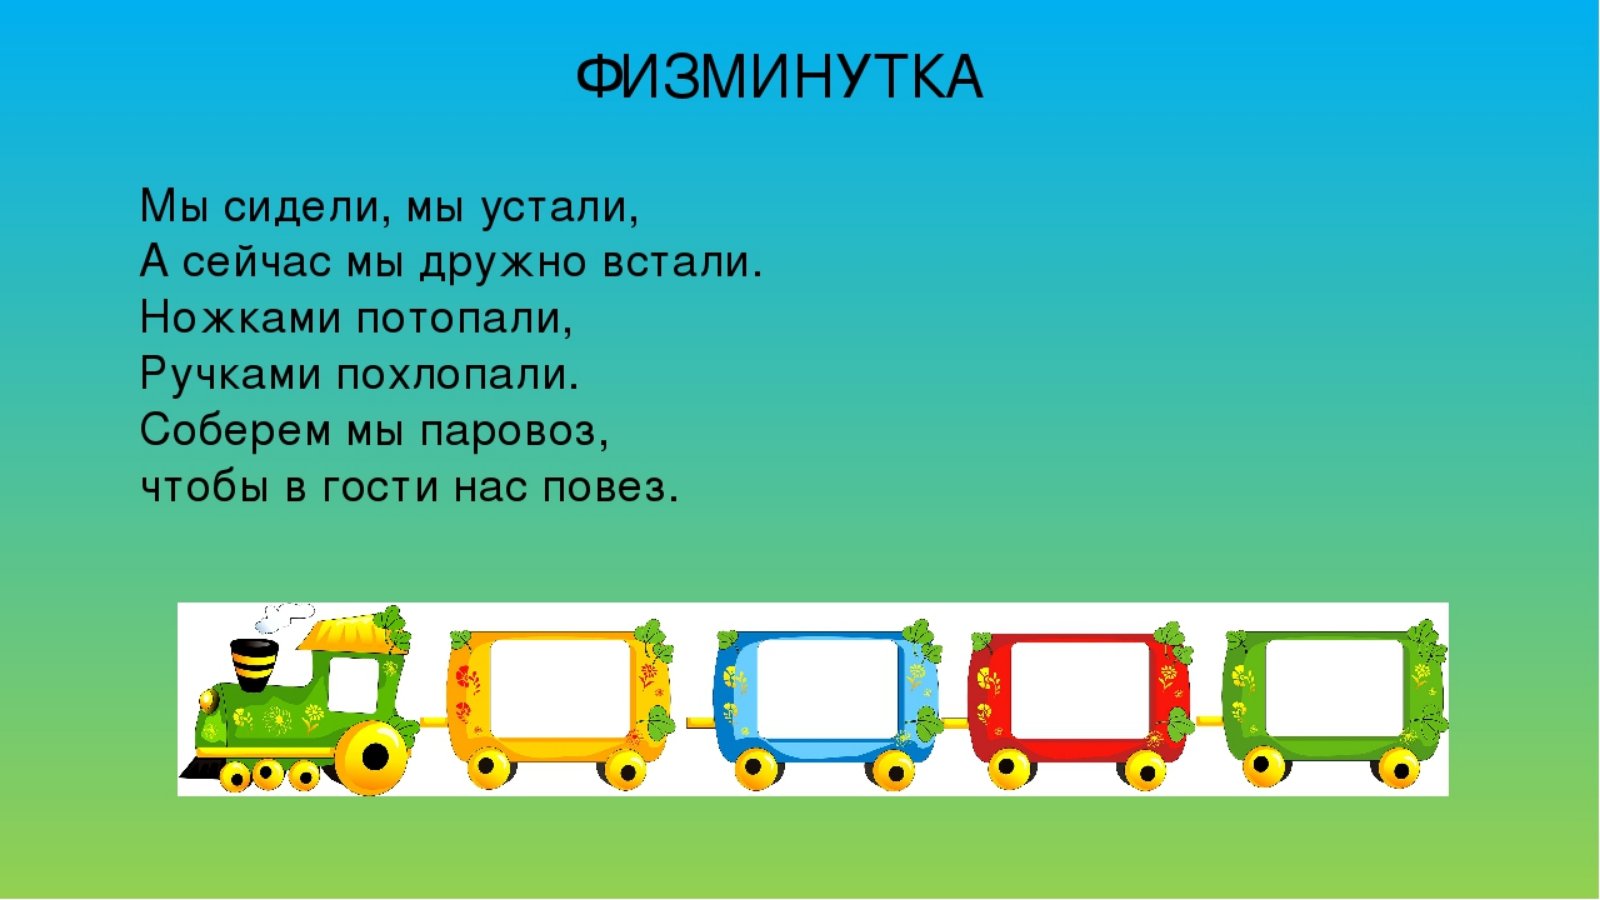 Физминутка поезд для детей 3-4 лет